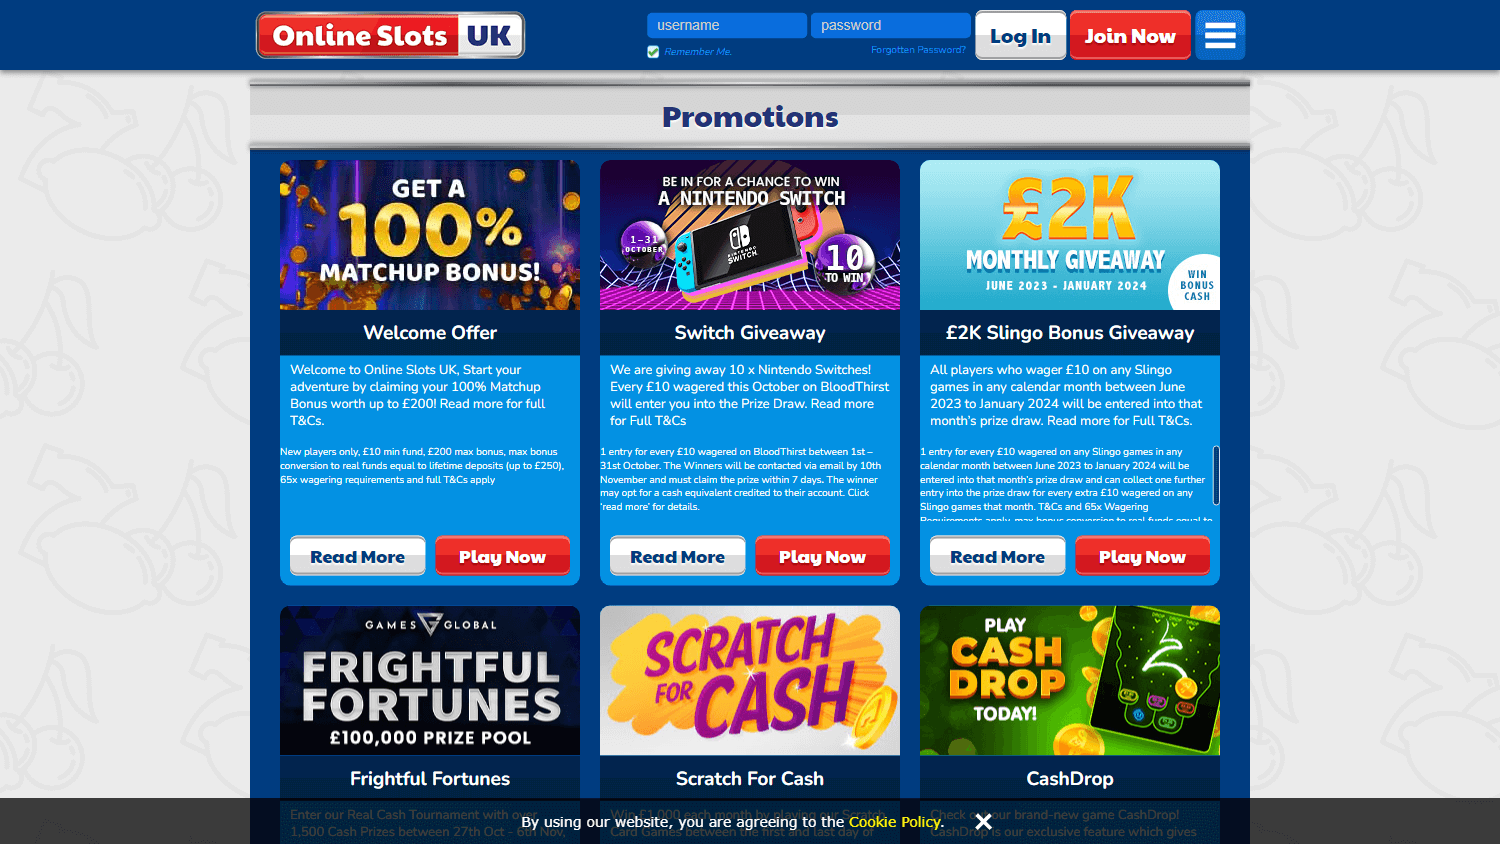 online_slots_uk_casino_promotions_desktop